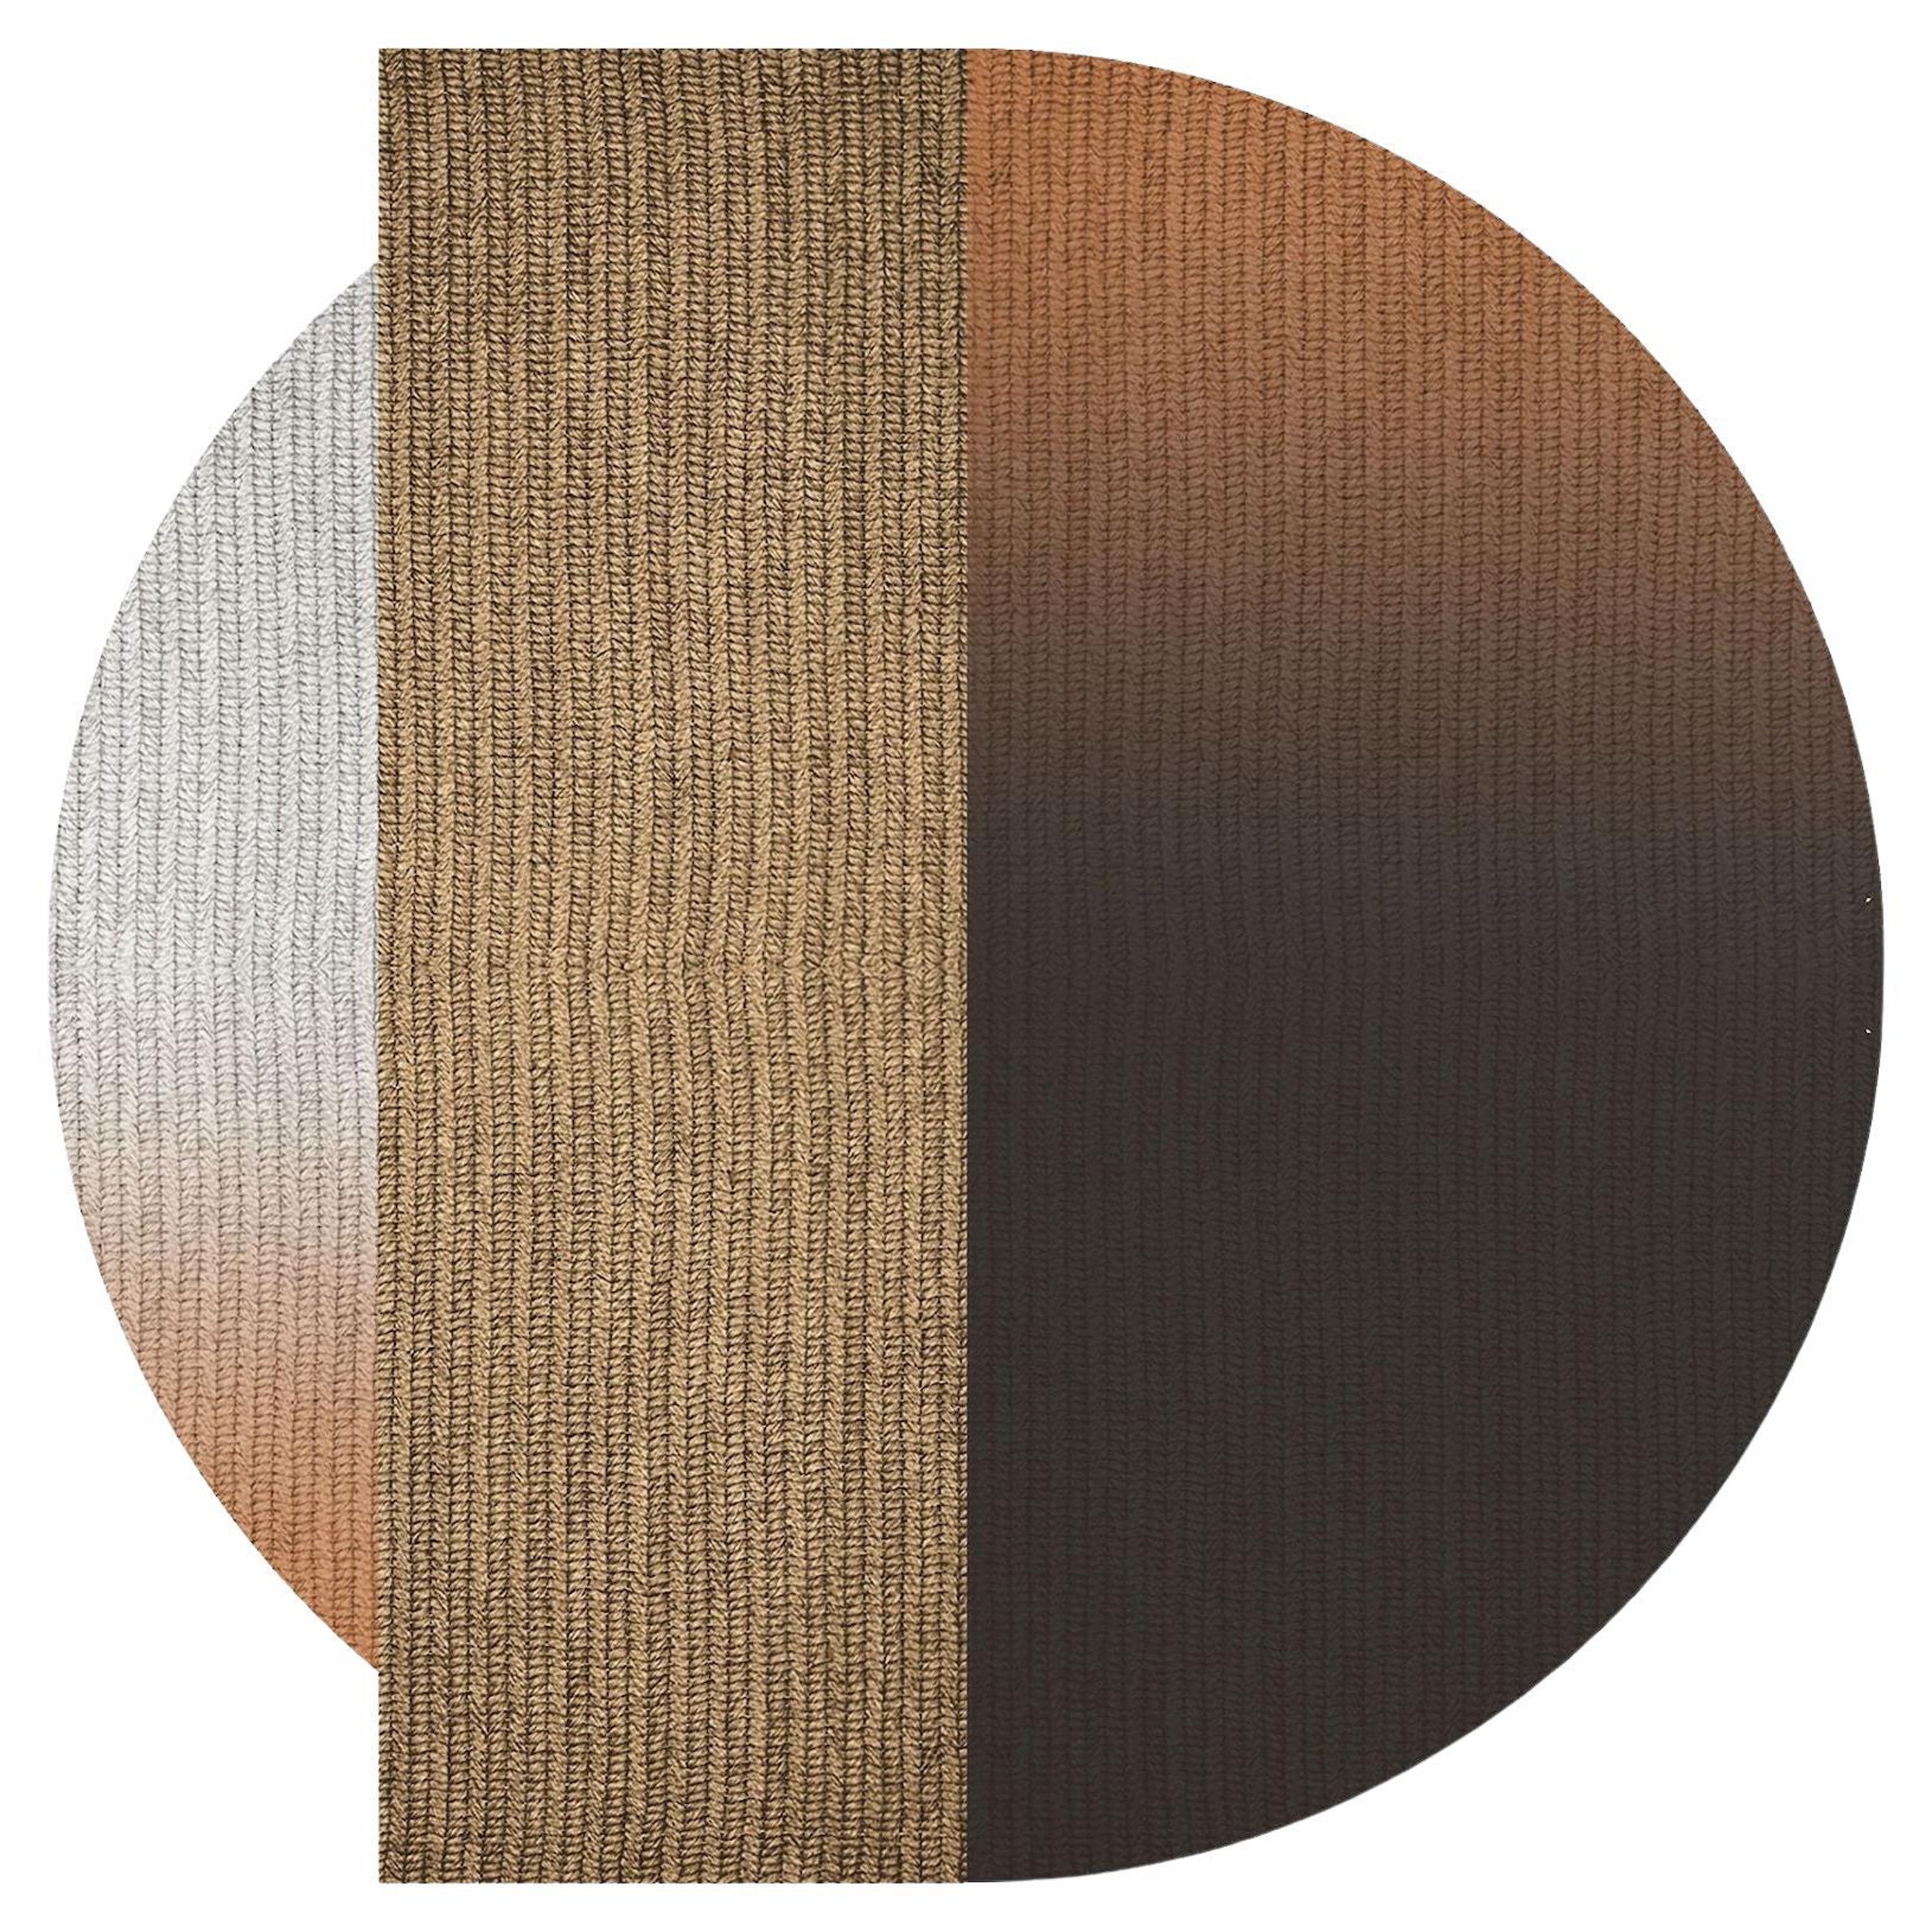 Teppich 'Flux' aus Abaca, Farbe 'Mahagoni', Ø 350cm von Claire Vos für Musett Design im Angebot